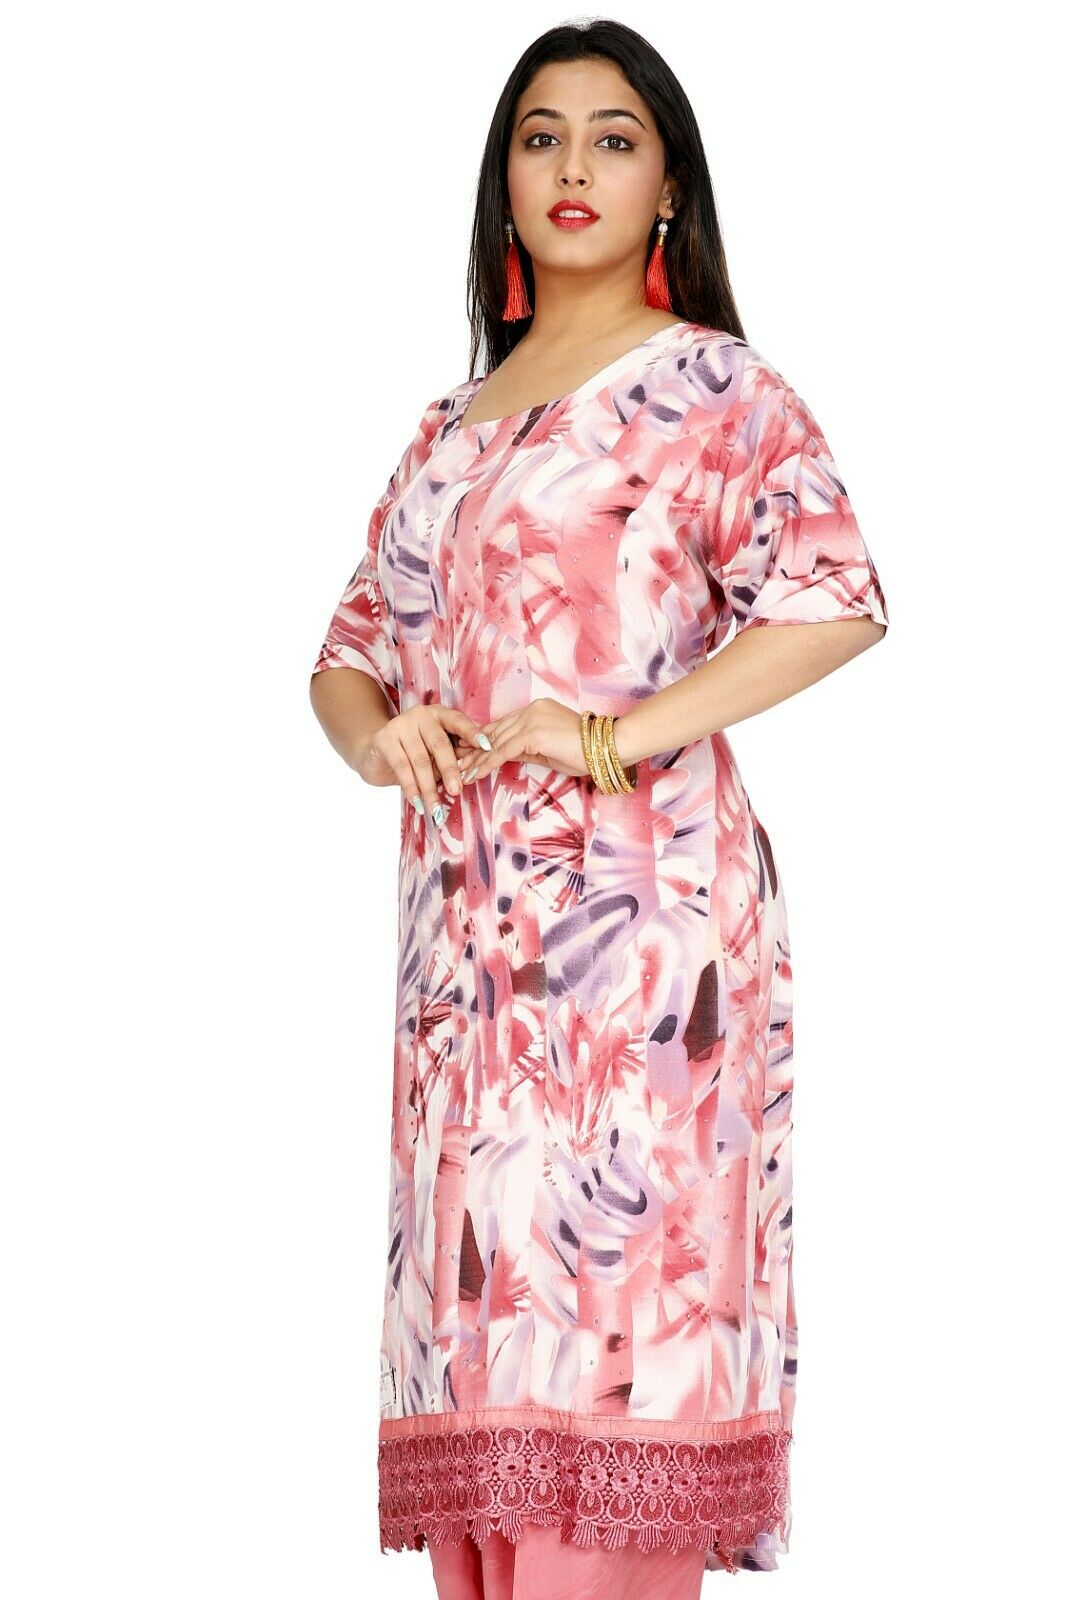 Pink Salwar Kameez for Women | Designer Partywear Dress for Women